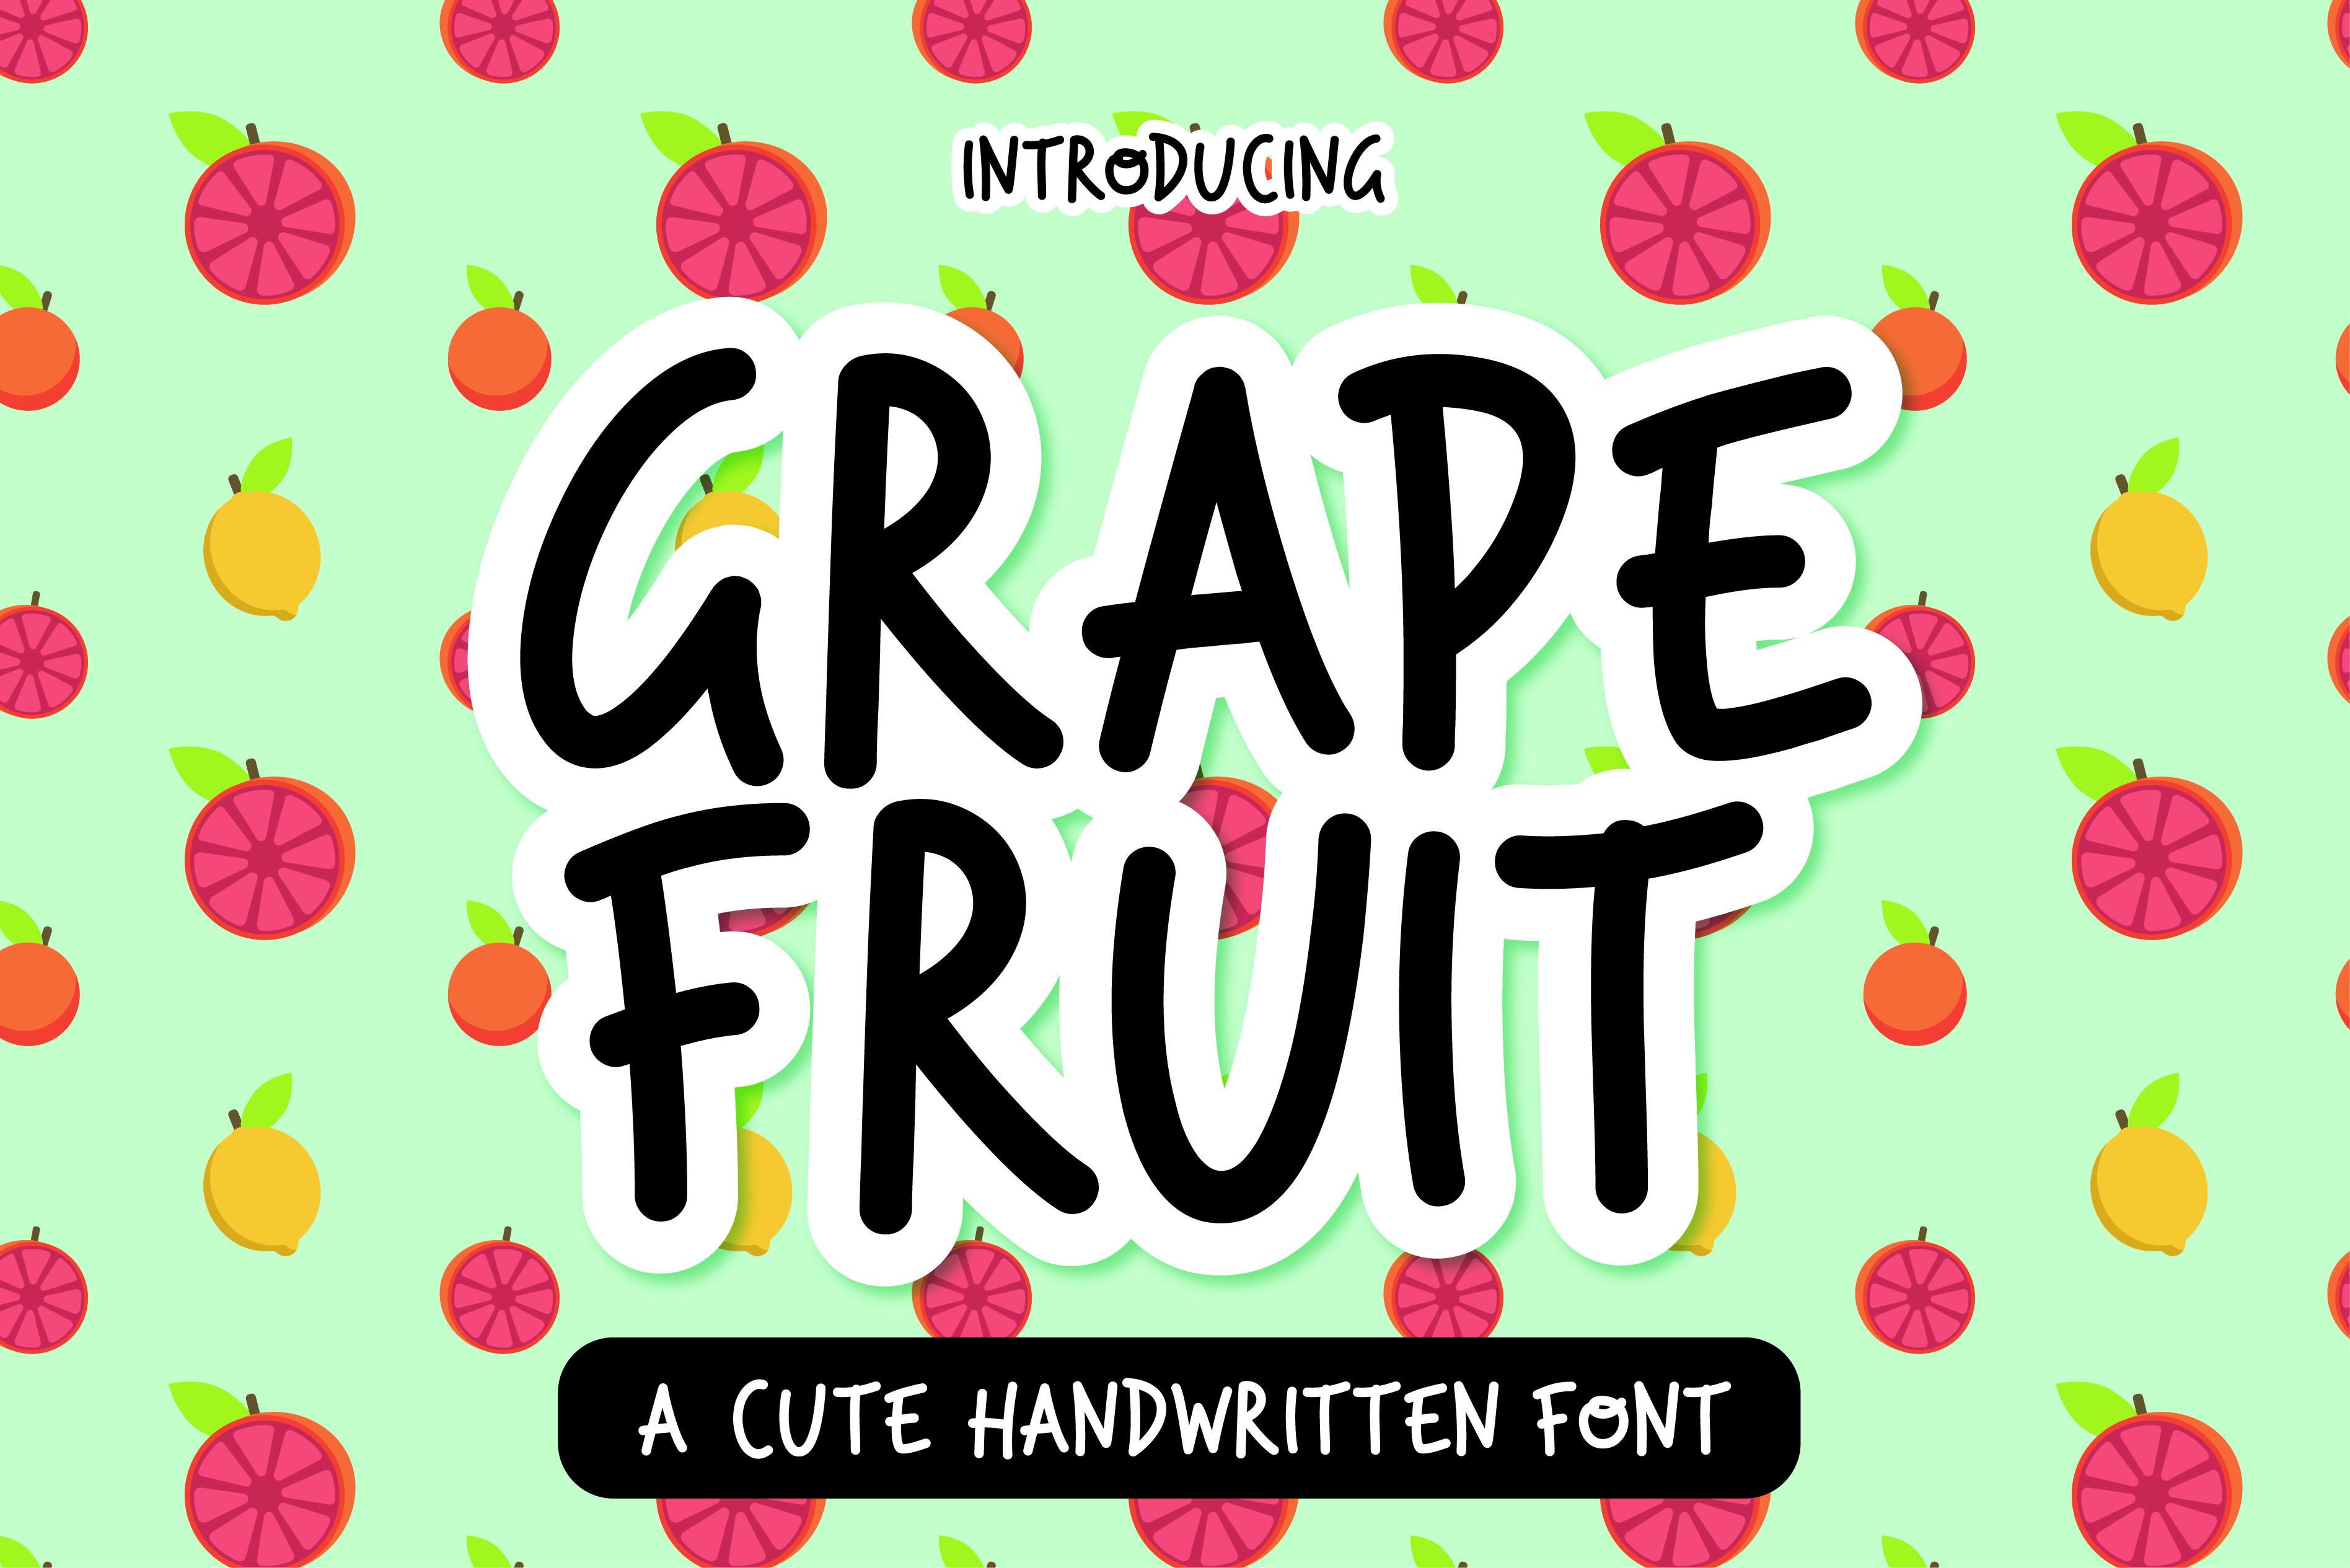 Grape Fruit Font